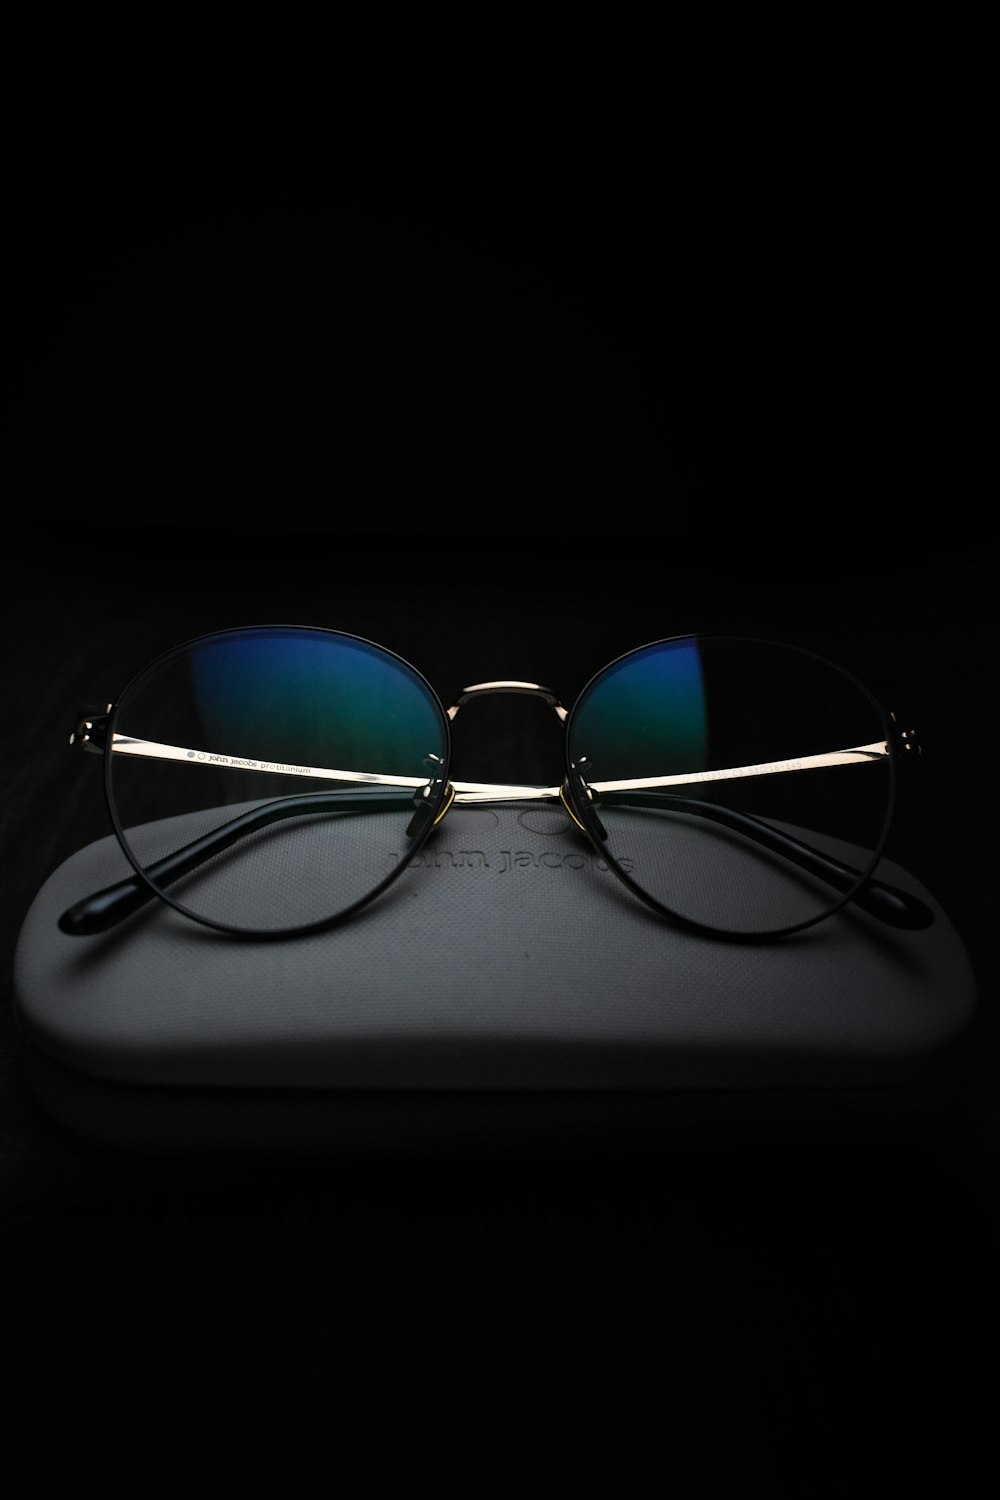 シルバーフレームのアビエータースタイルのサングラスの写真 – Unsplashで見つけるグレーの無料写真